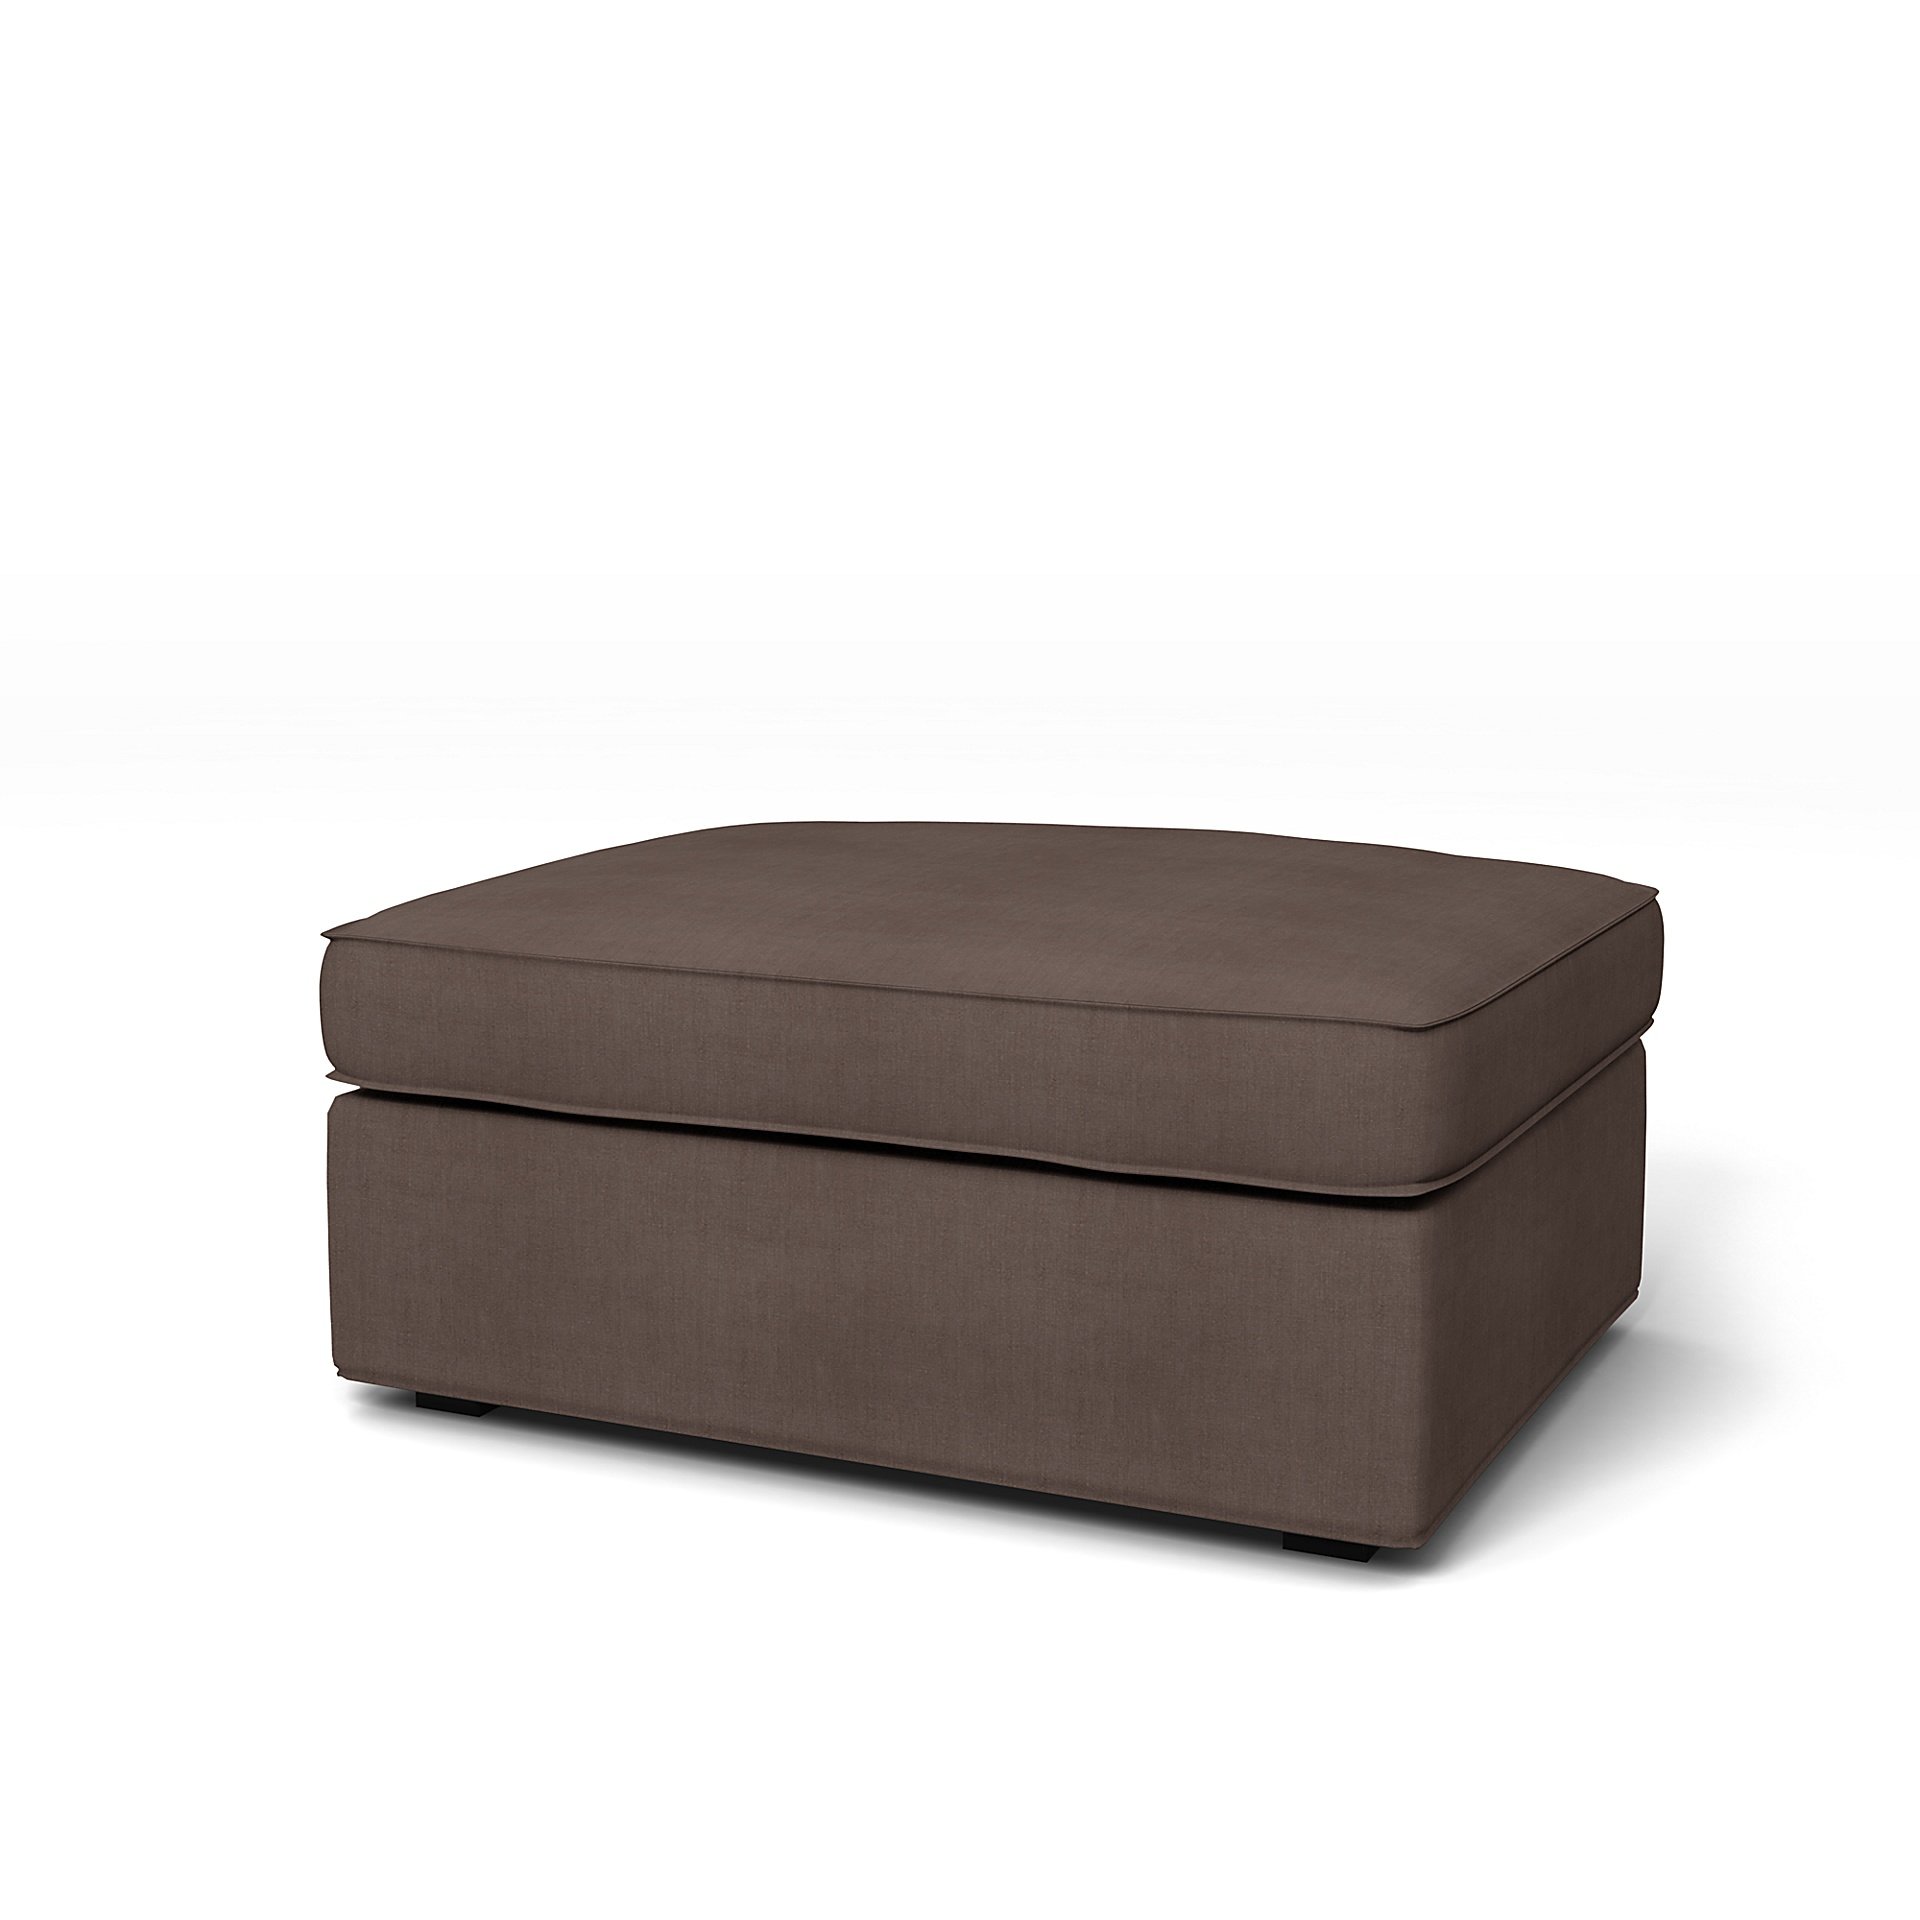 IKEA - Kivik Footstool Cover, Cocoa, Linen - Bemz